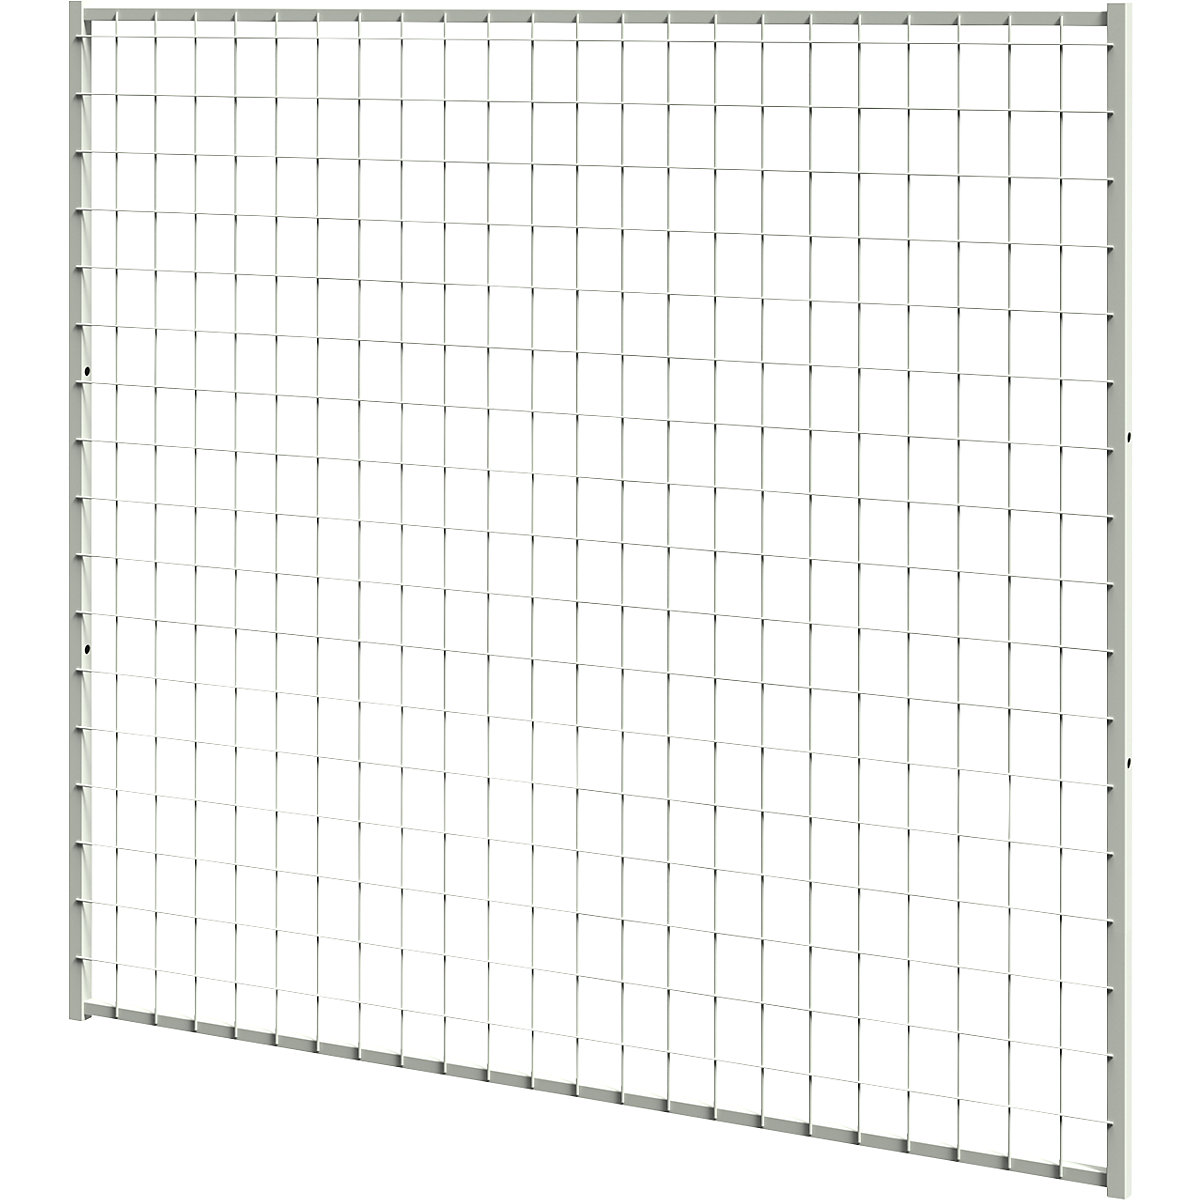 Systém dělicích stěn X-STORE 2.0, stěnový prvek – Axelent, výška 1100 mm, šířka 1200 mm-2